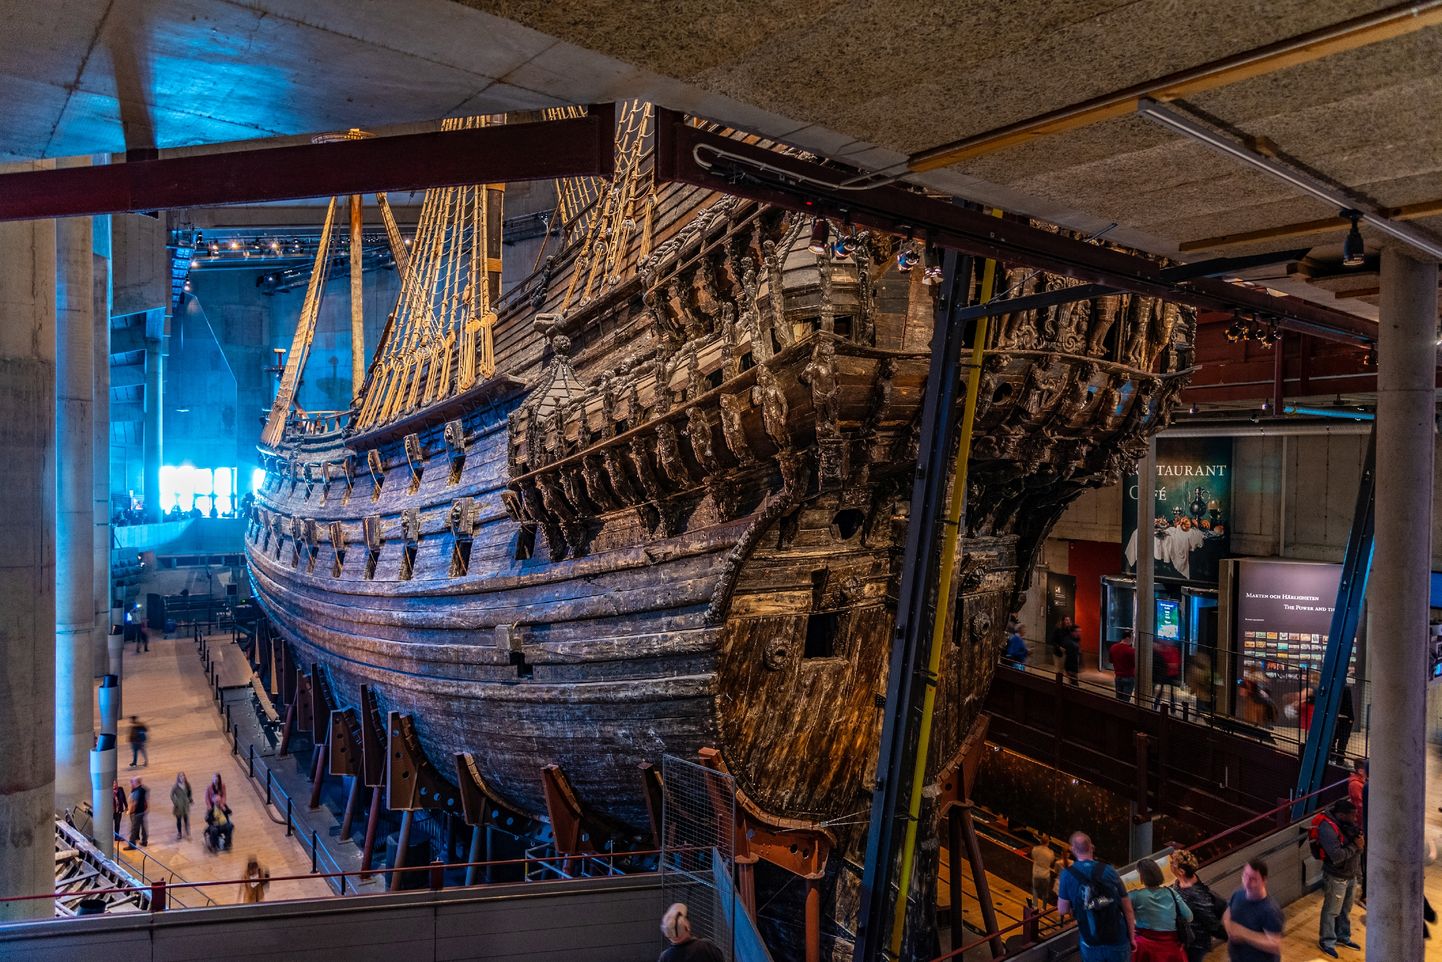 Rootsi 17. sajandi sõjalaev Vasa Stockholmis Vasa muuseumis